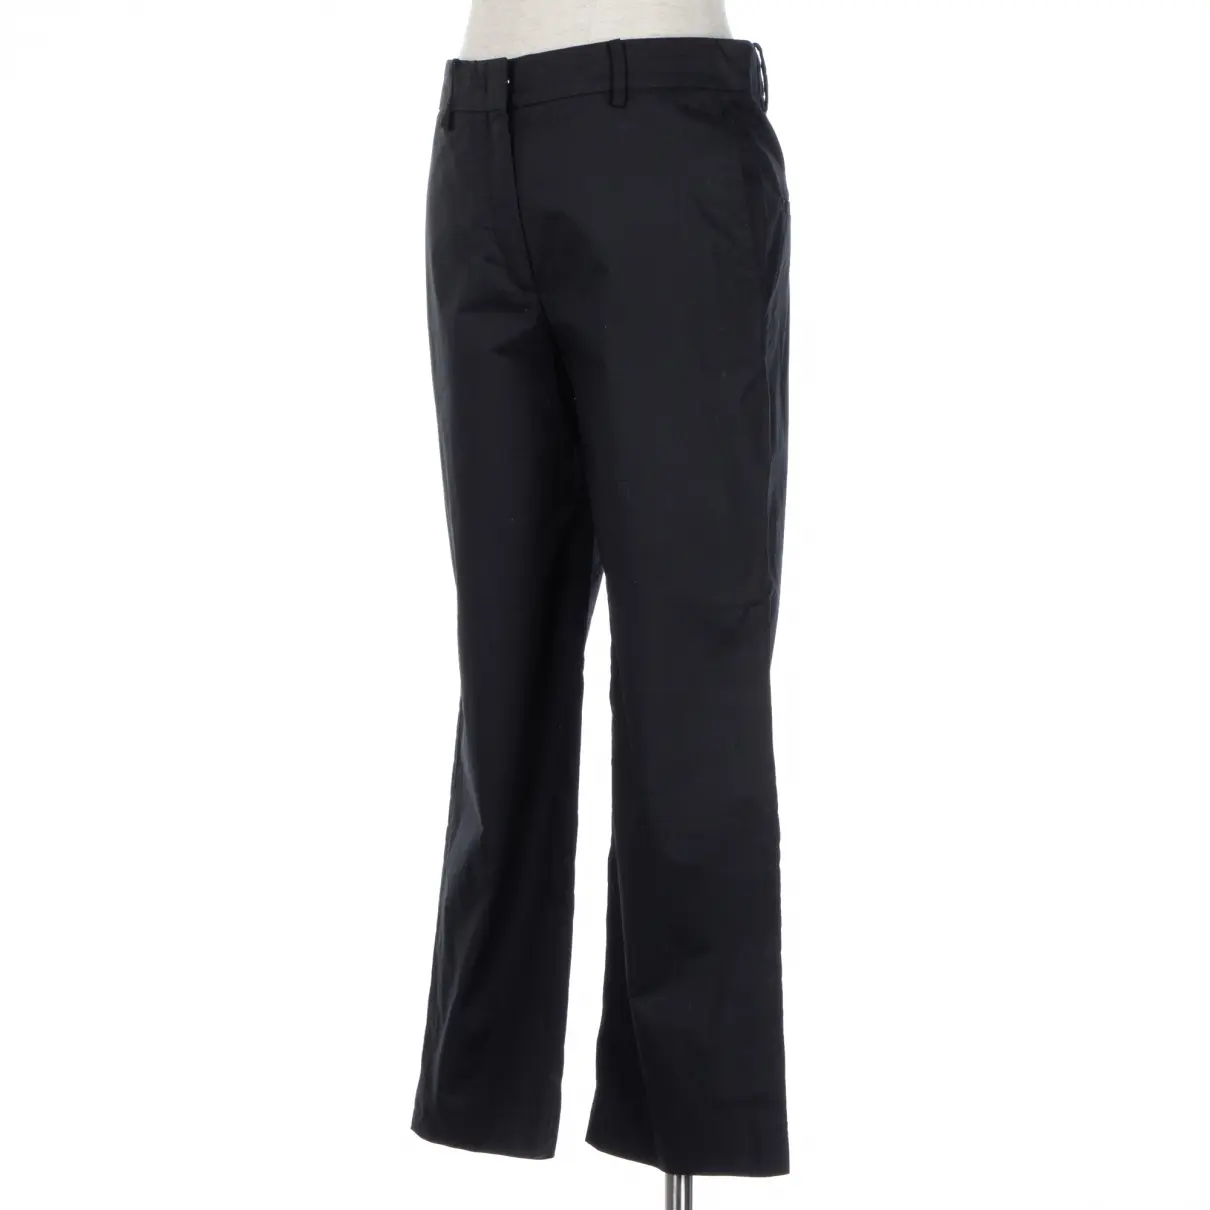 Buy N°21 Trousers online